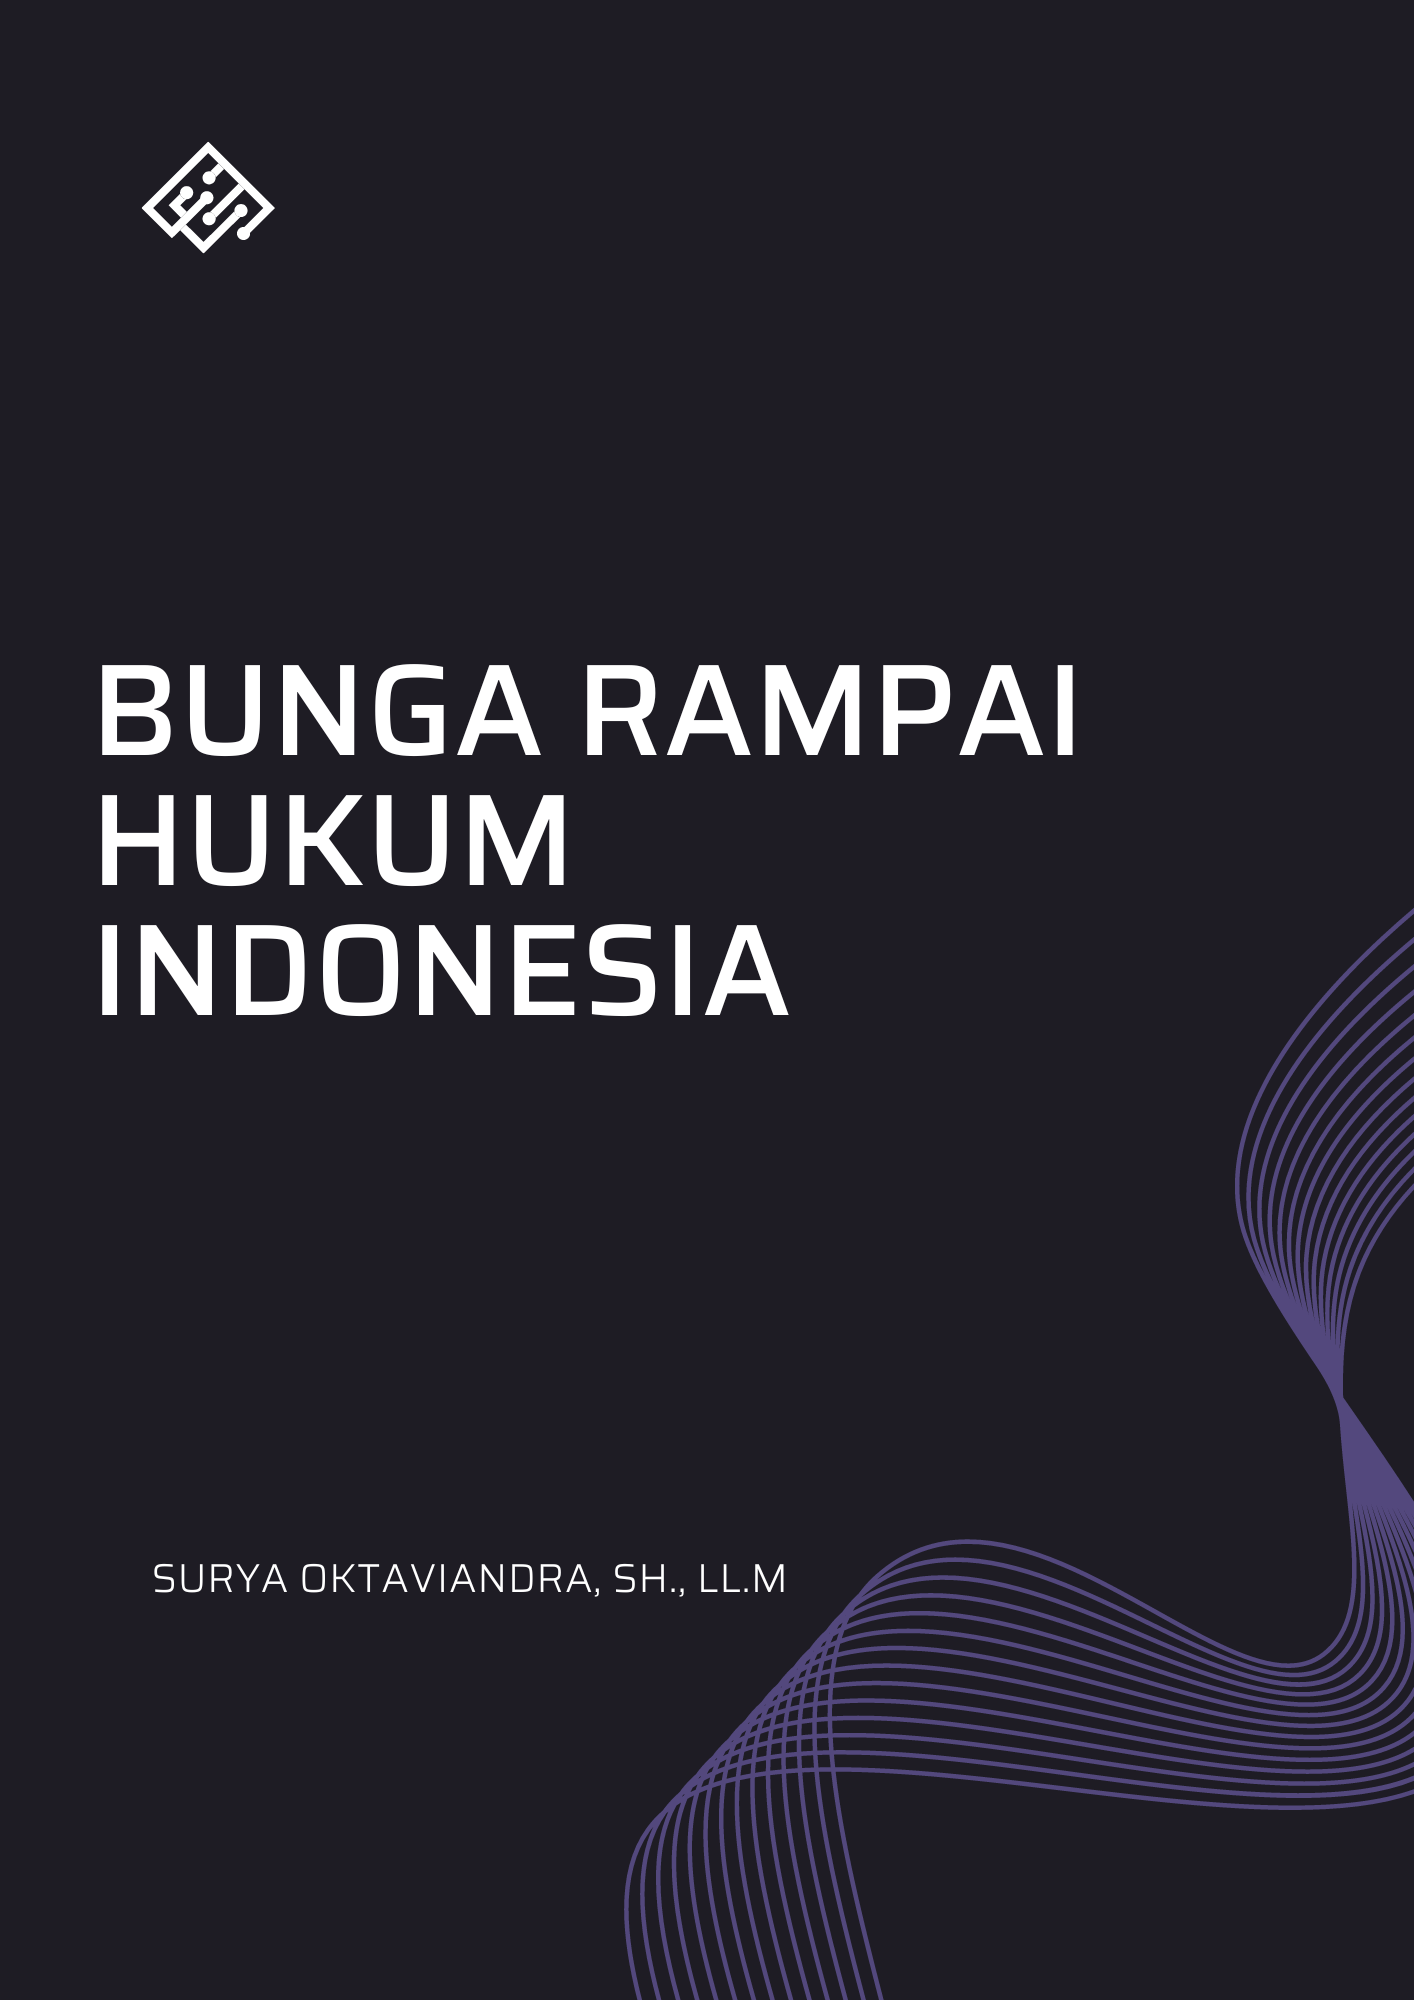 BUNGA RAMPAI HUKUM INDONESIA